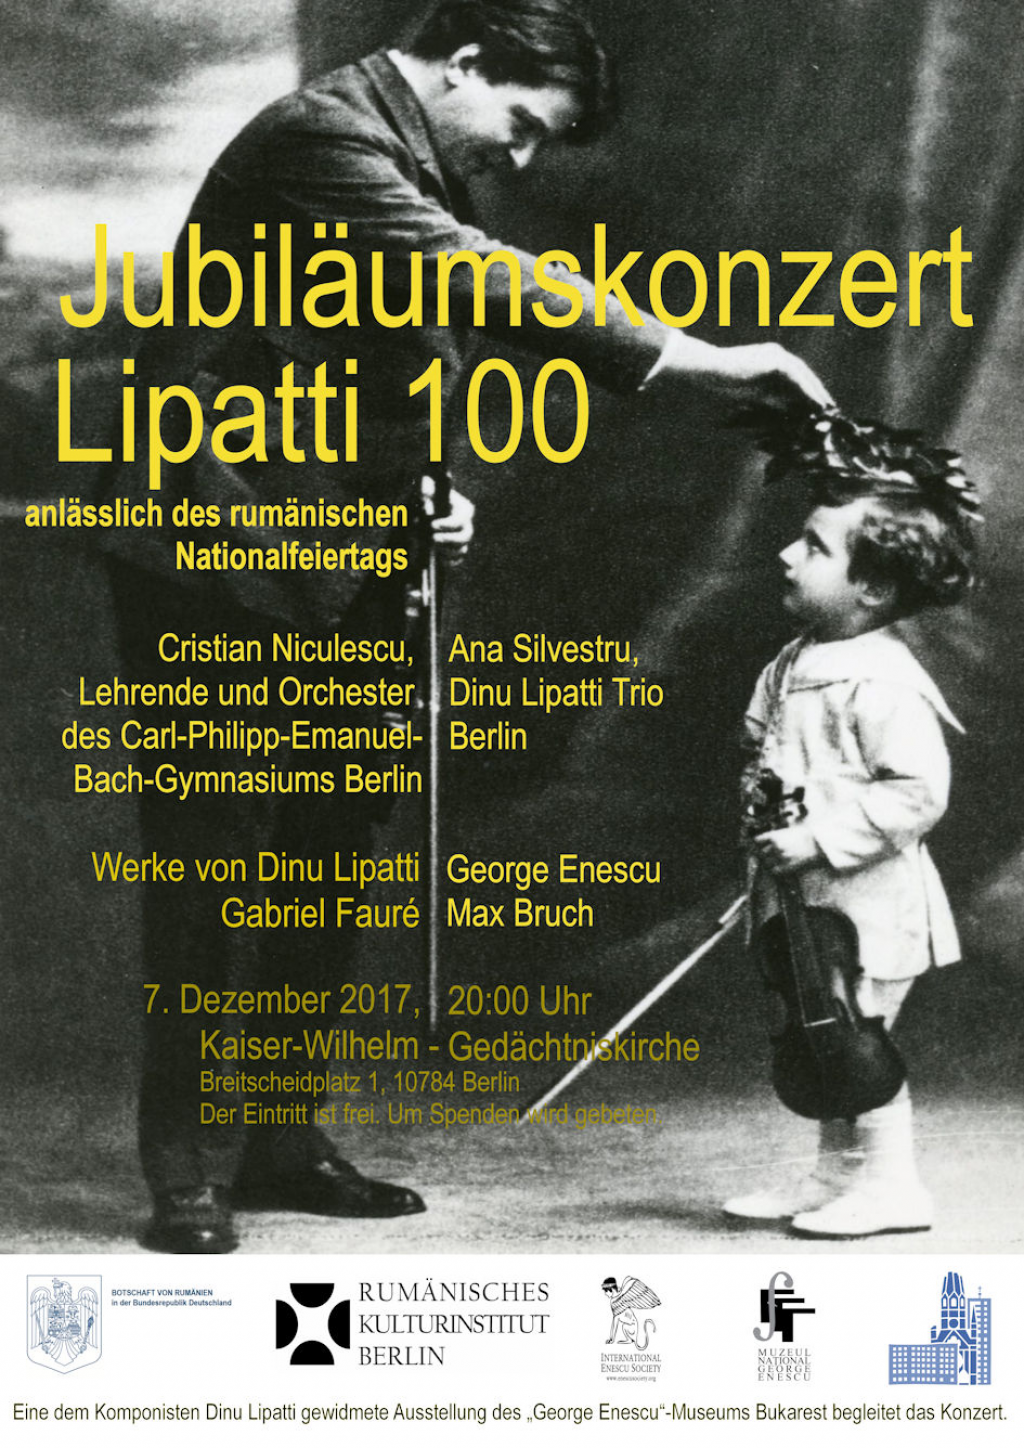 Concert omagial Dinu Lipatti, de Ziua Nationala